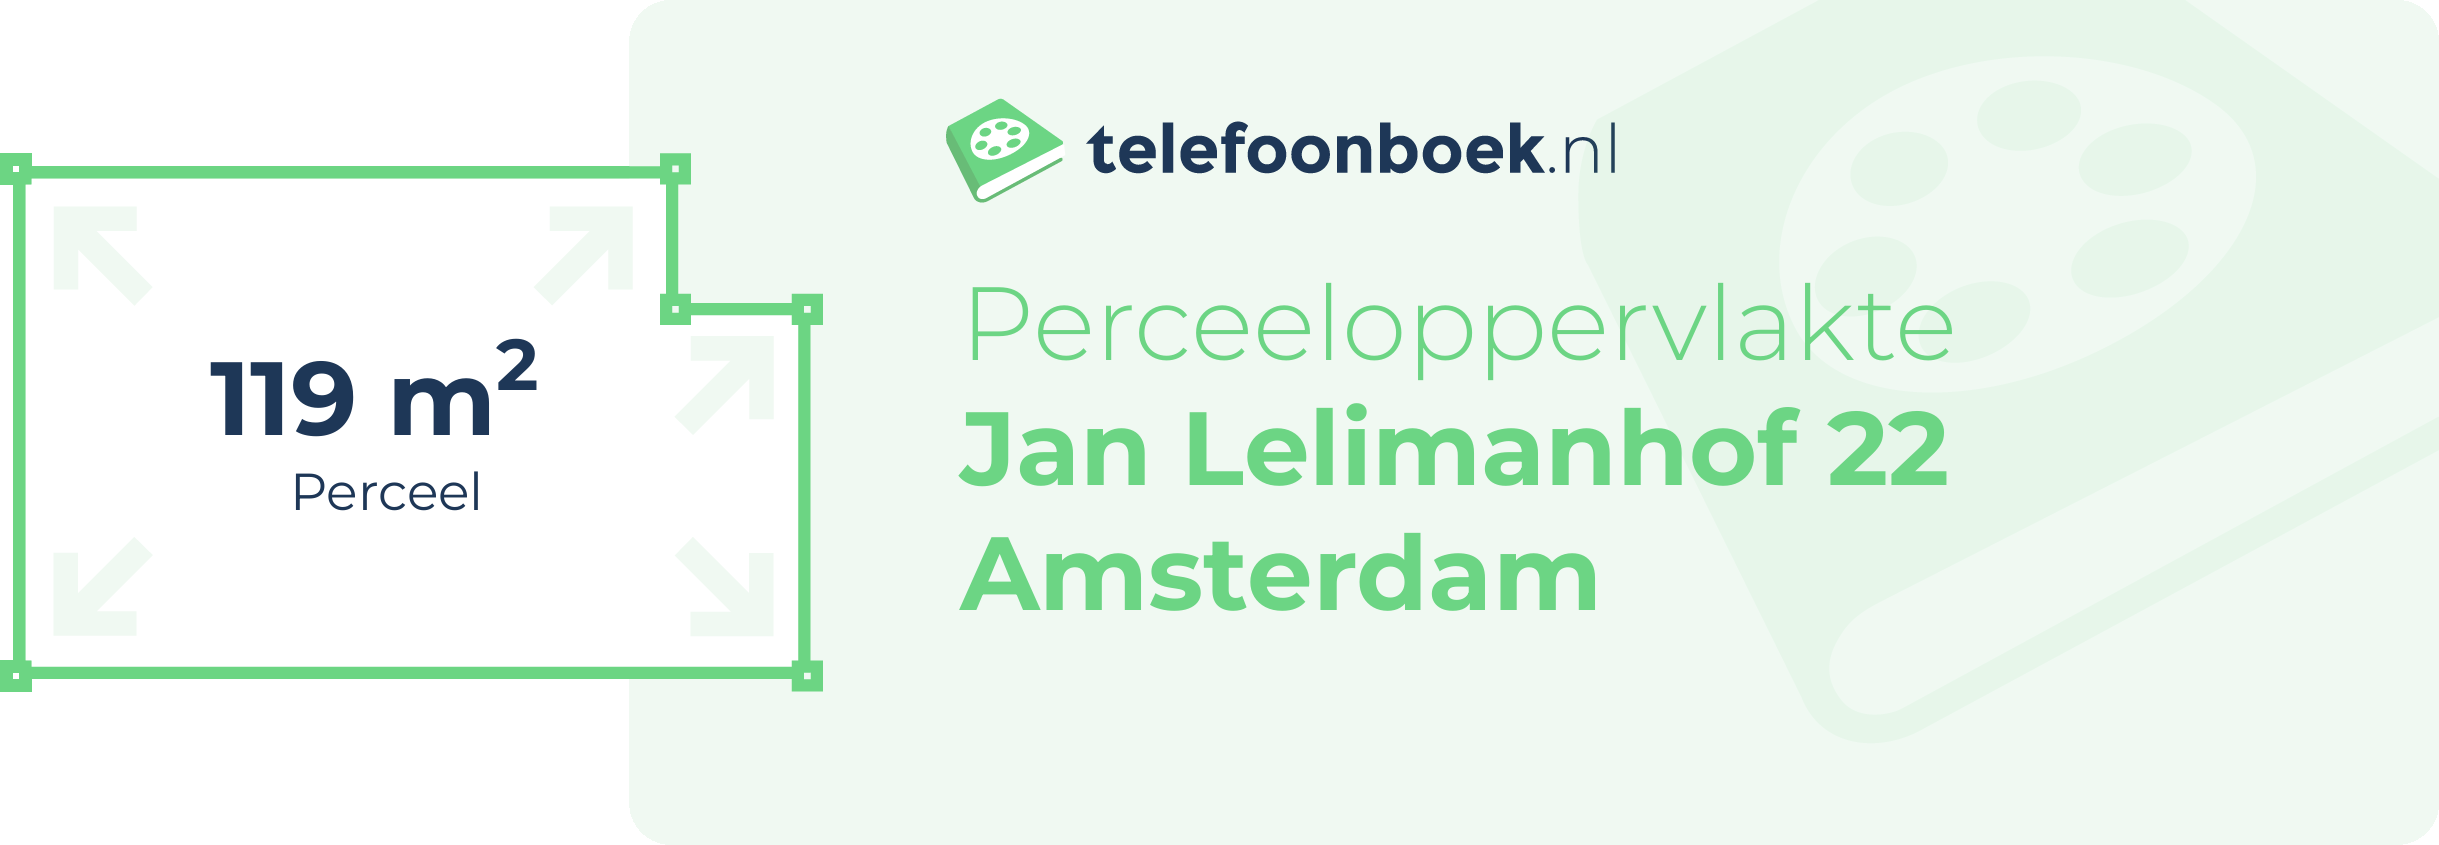 Perceeloppervlakte Jan Lelimanhof 22 Amsterdam